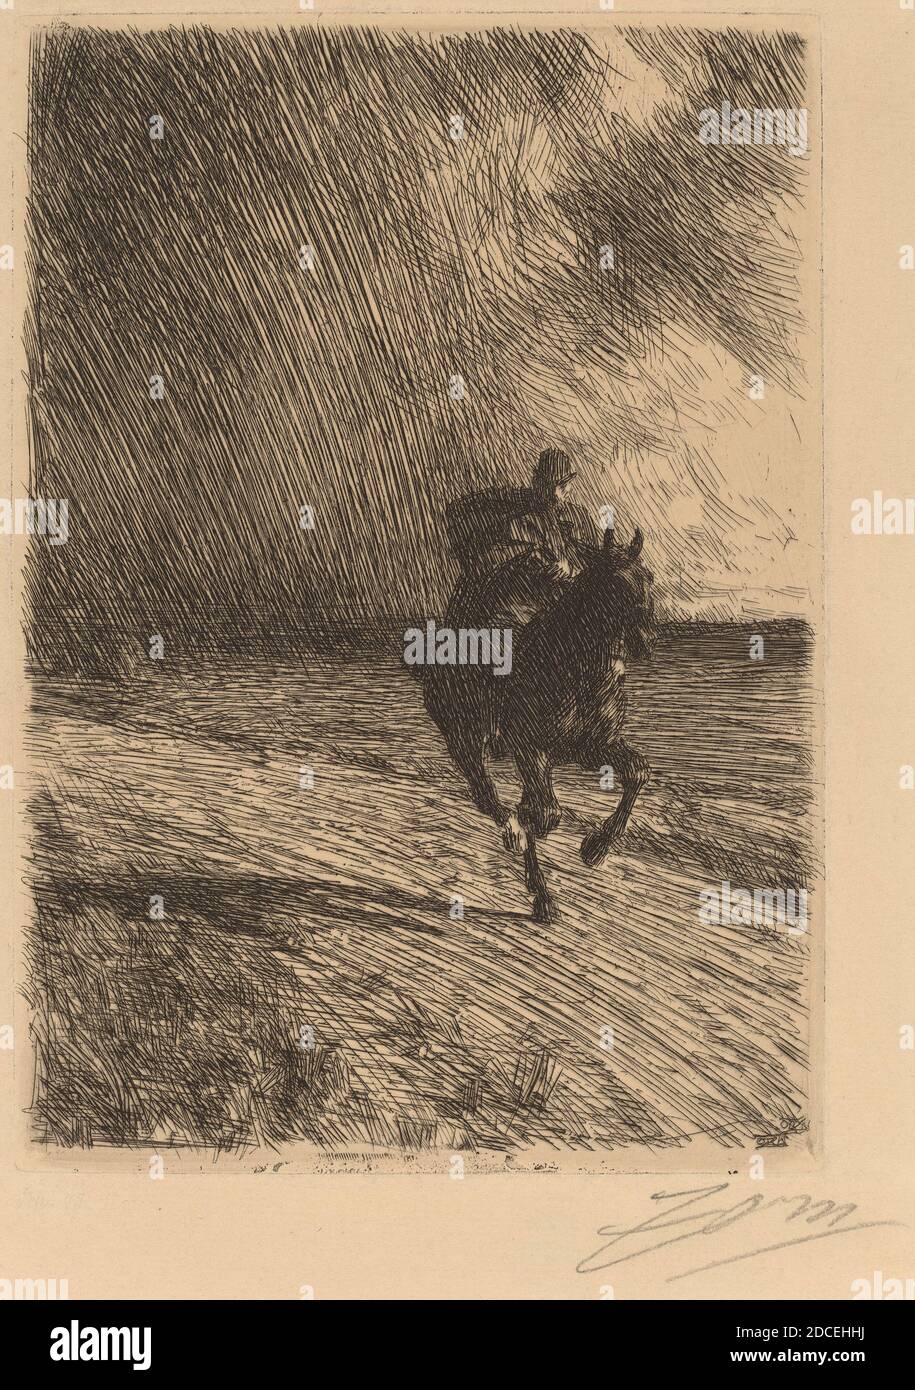 Anders Zorn, (artista), sueco, 1860 - 1920, Storm, 1891, grabado sobre papel colocado Foto de stock